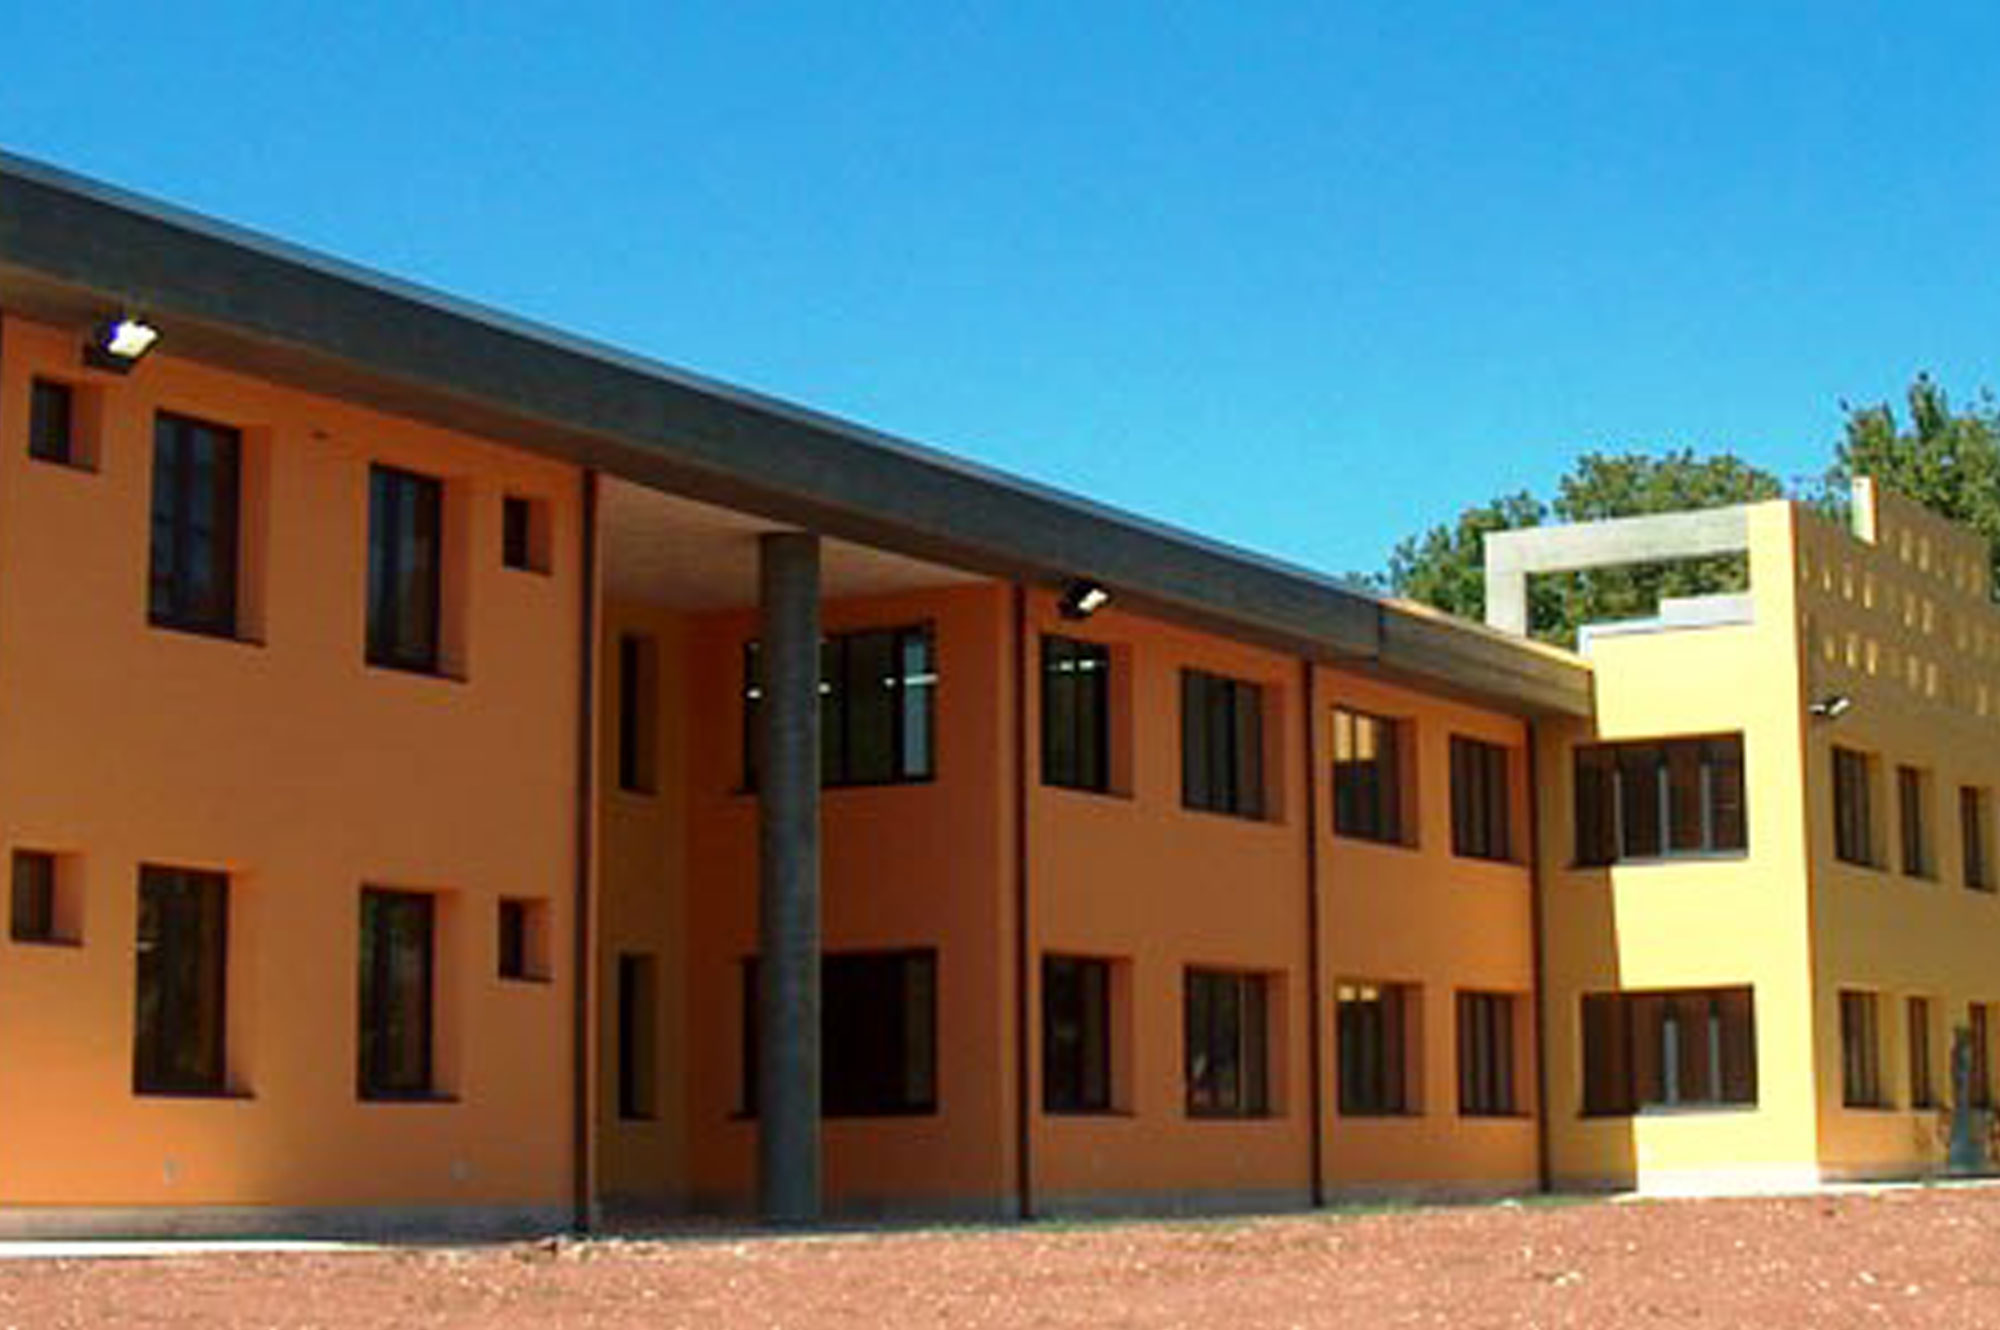 New School Complex in Rieti